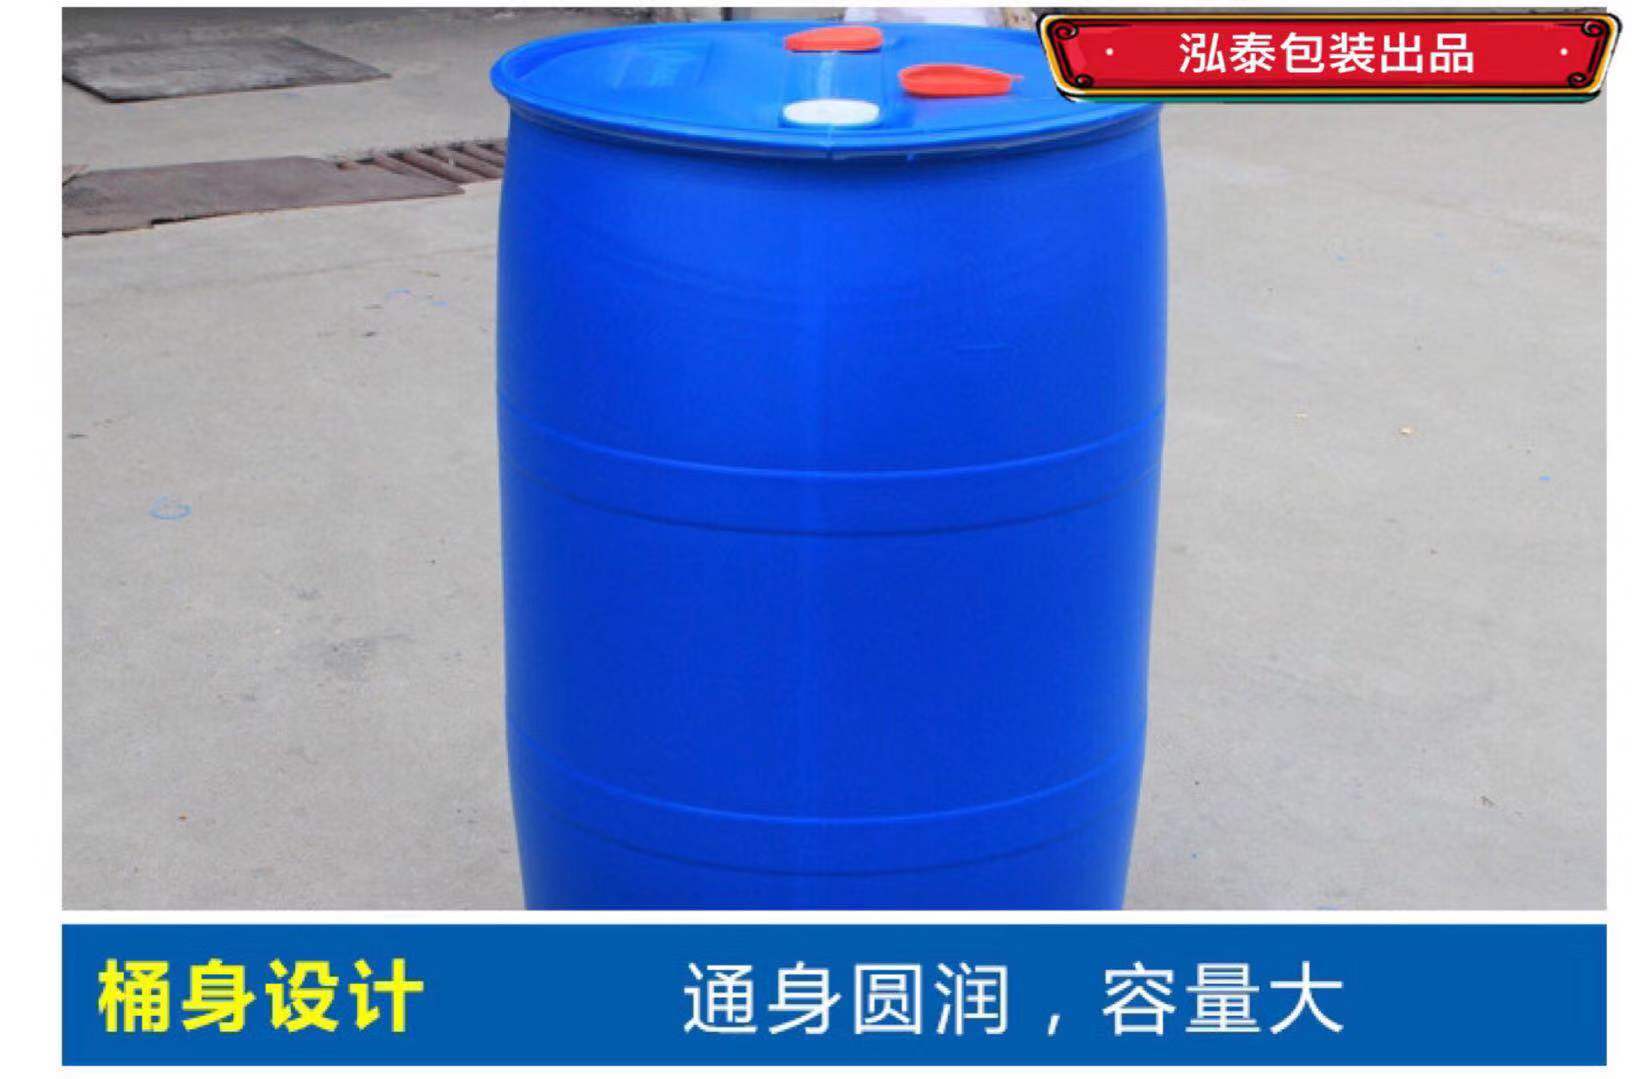 化工桶厂家 化工桶批发 200升化工桶结实耐用寿命长